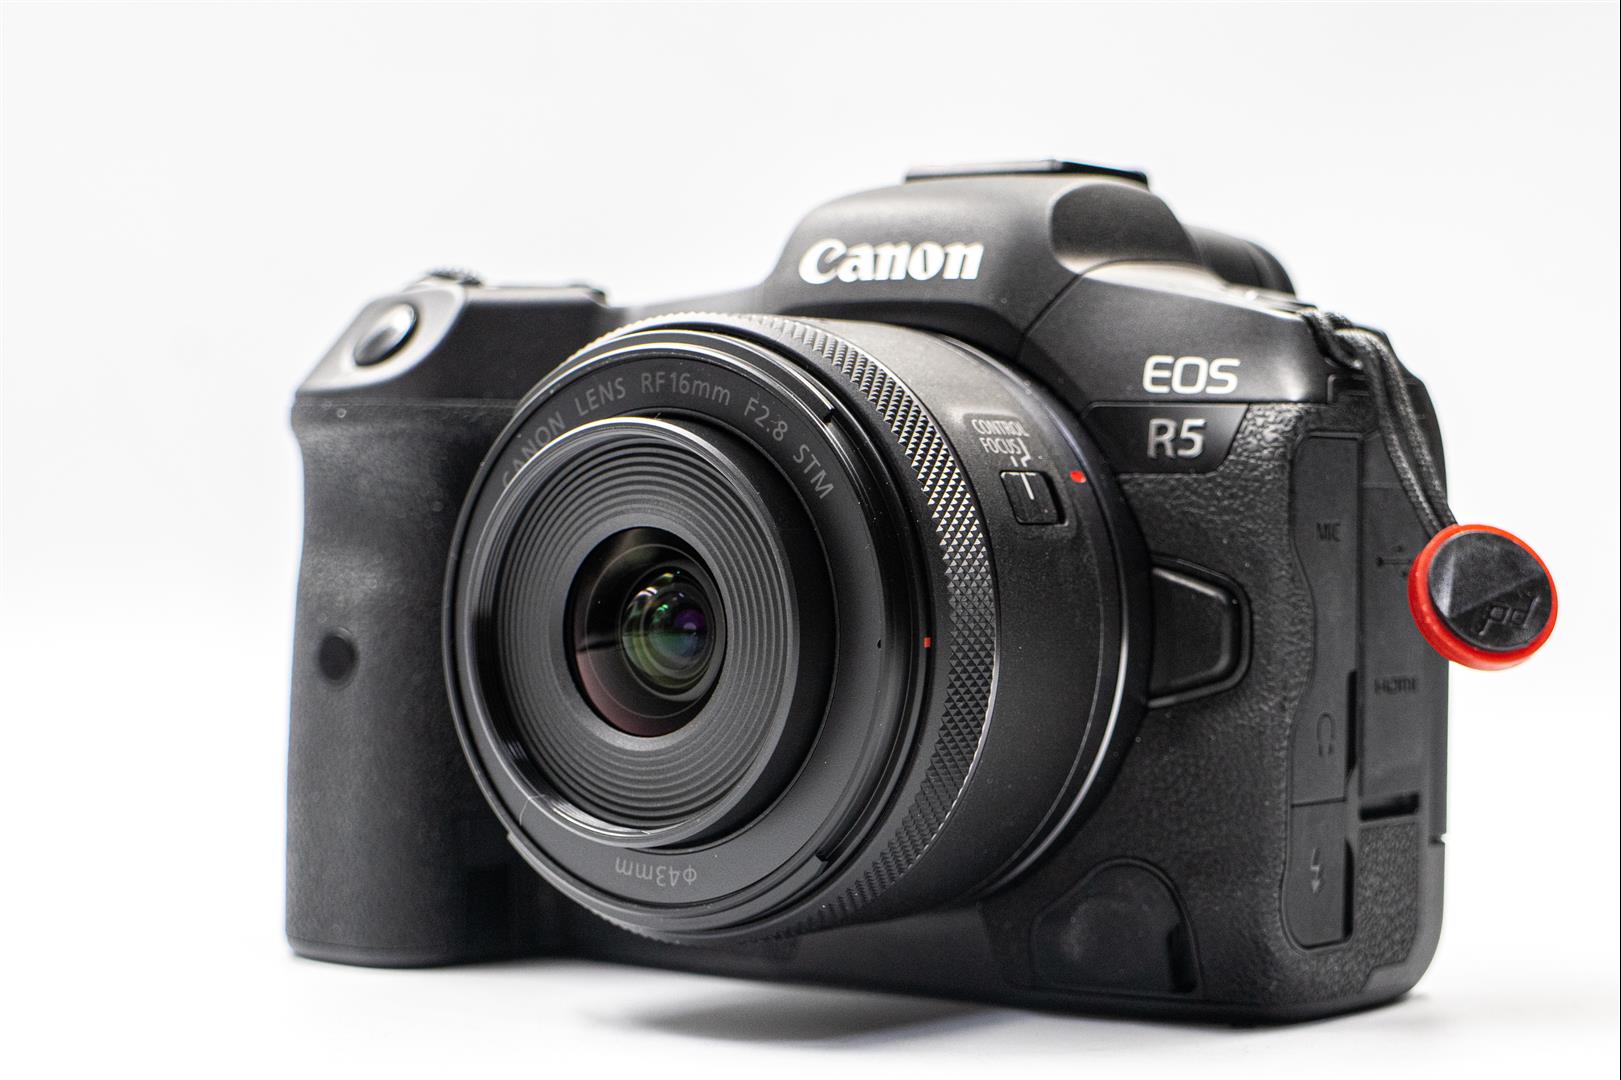 Canon RF 16mm F2.8 開箱